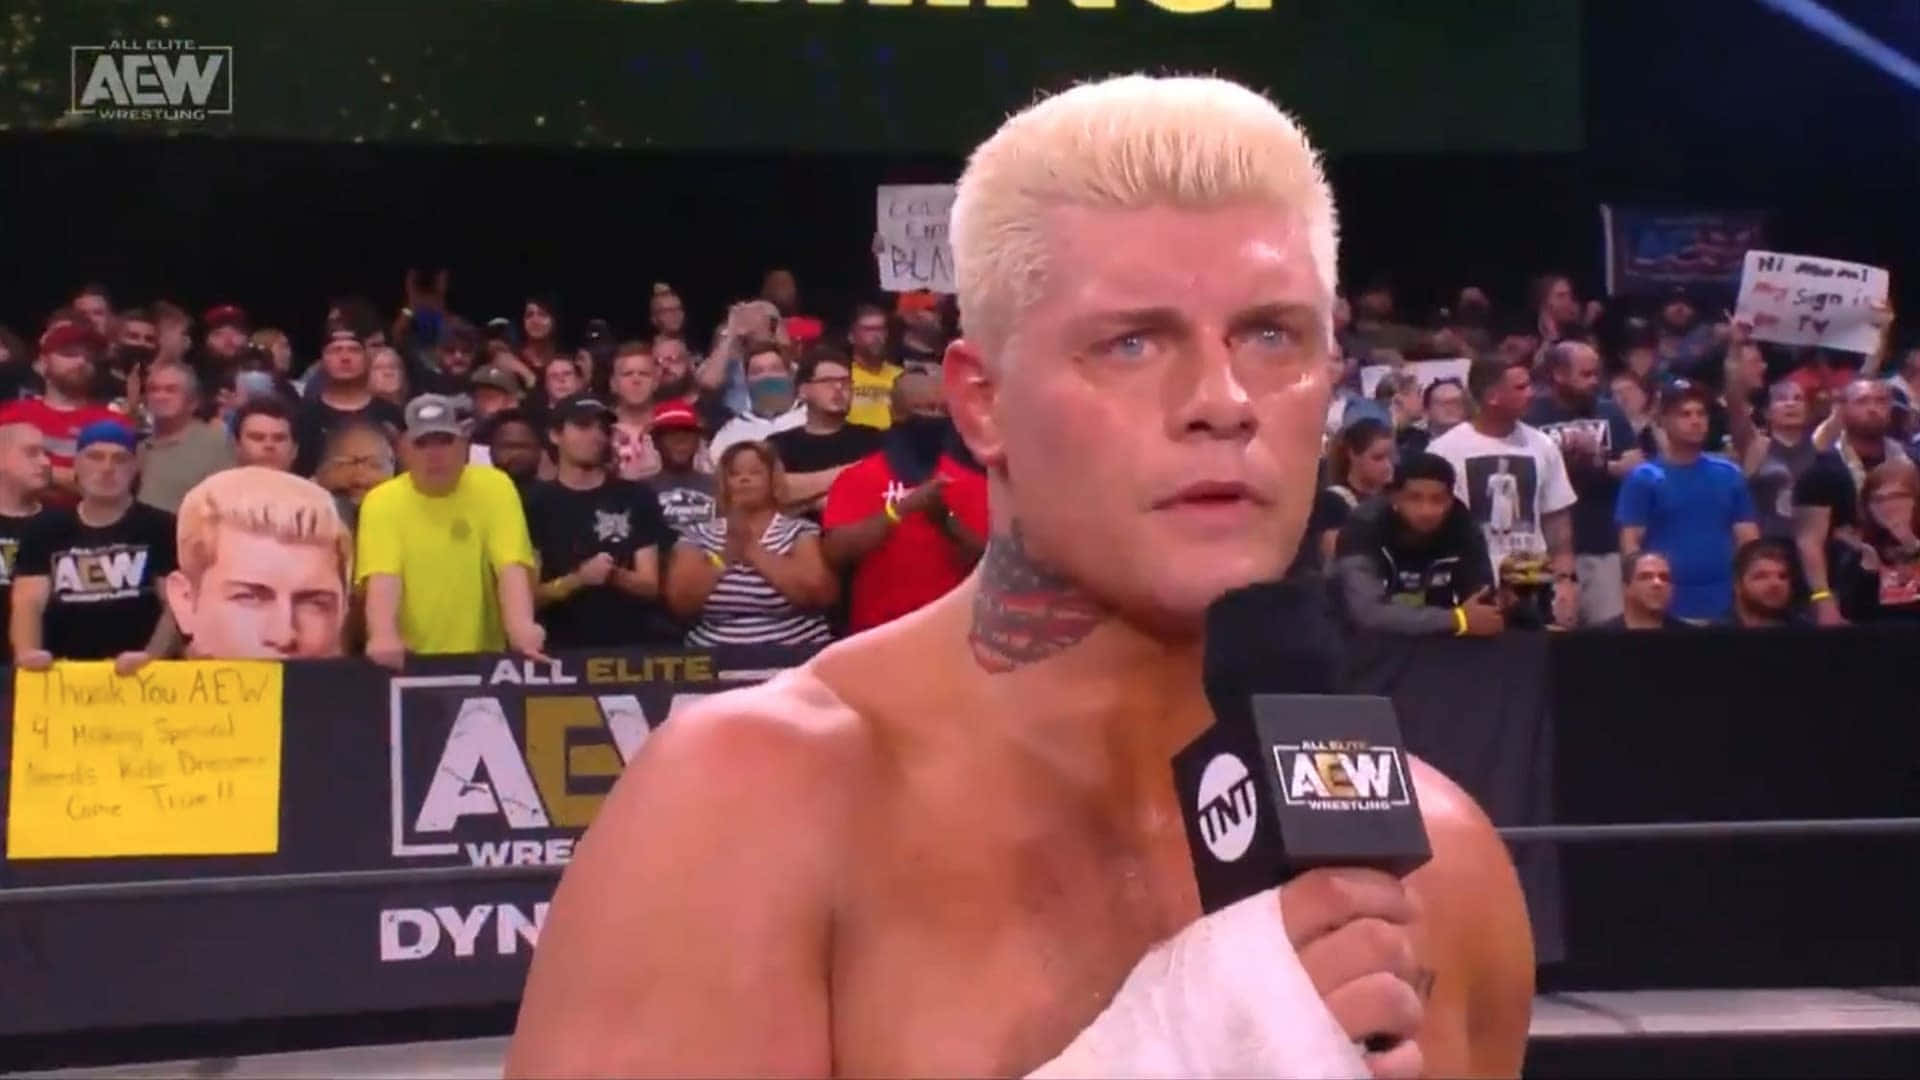 Aew Interview Of Wrestler Cody Rhodes Background